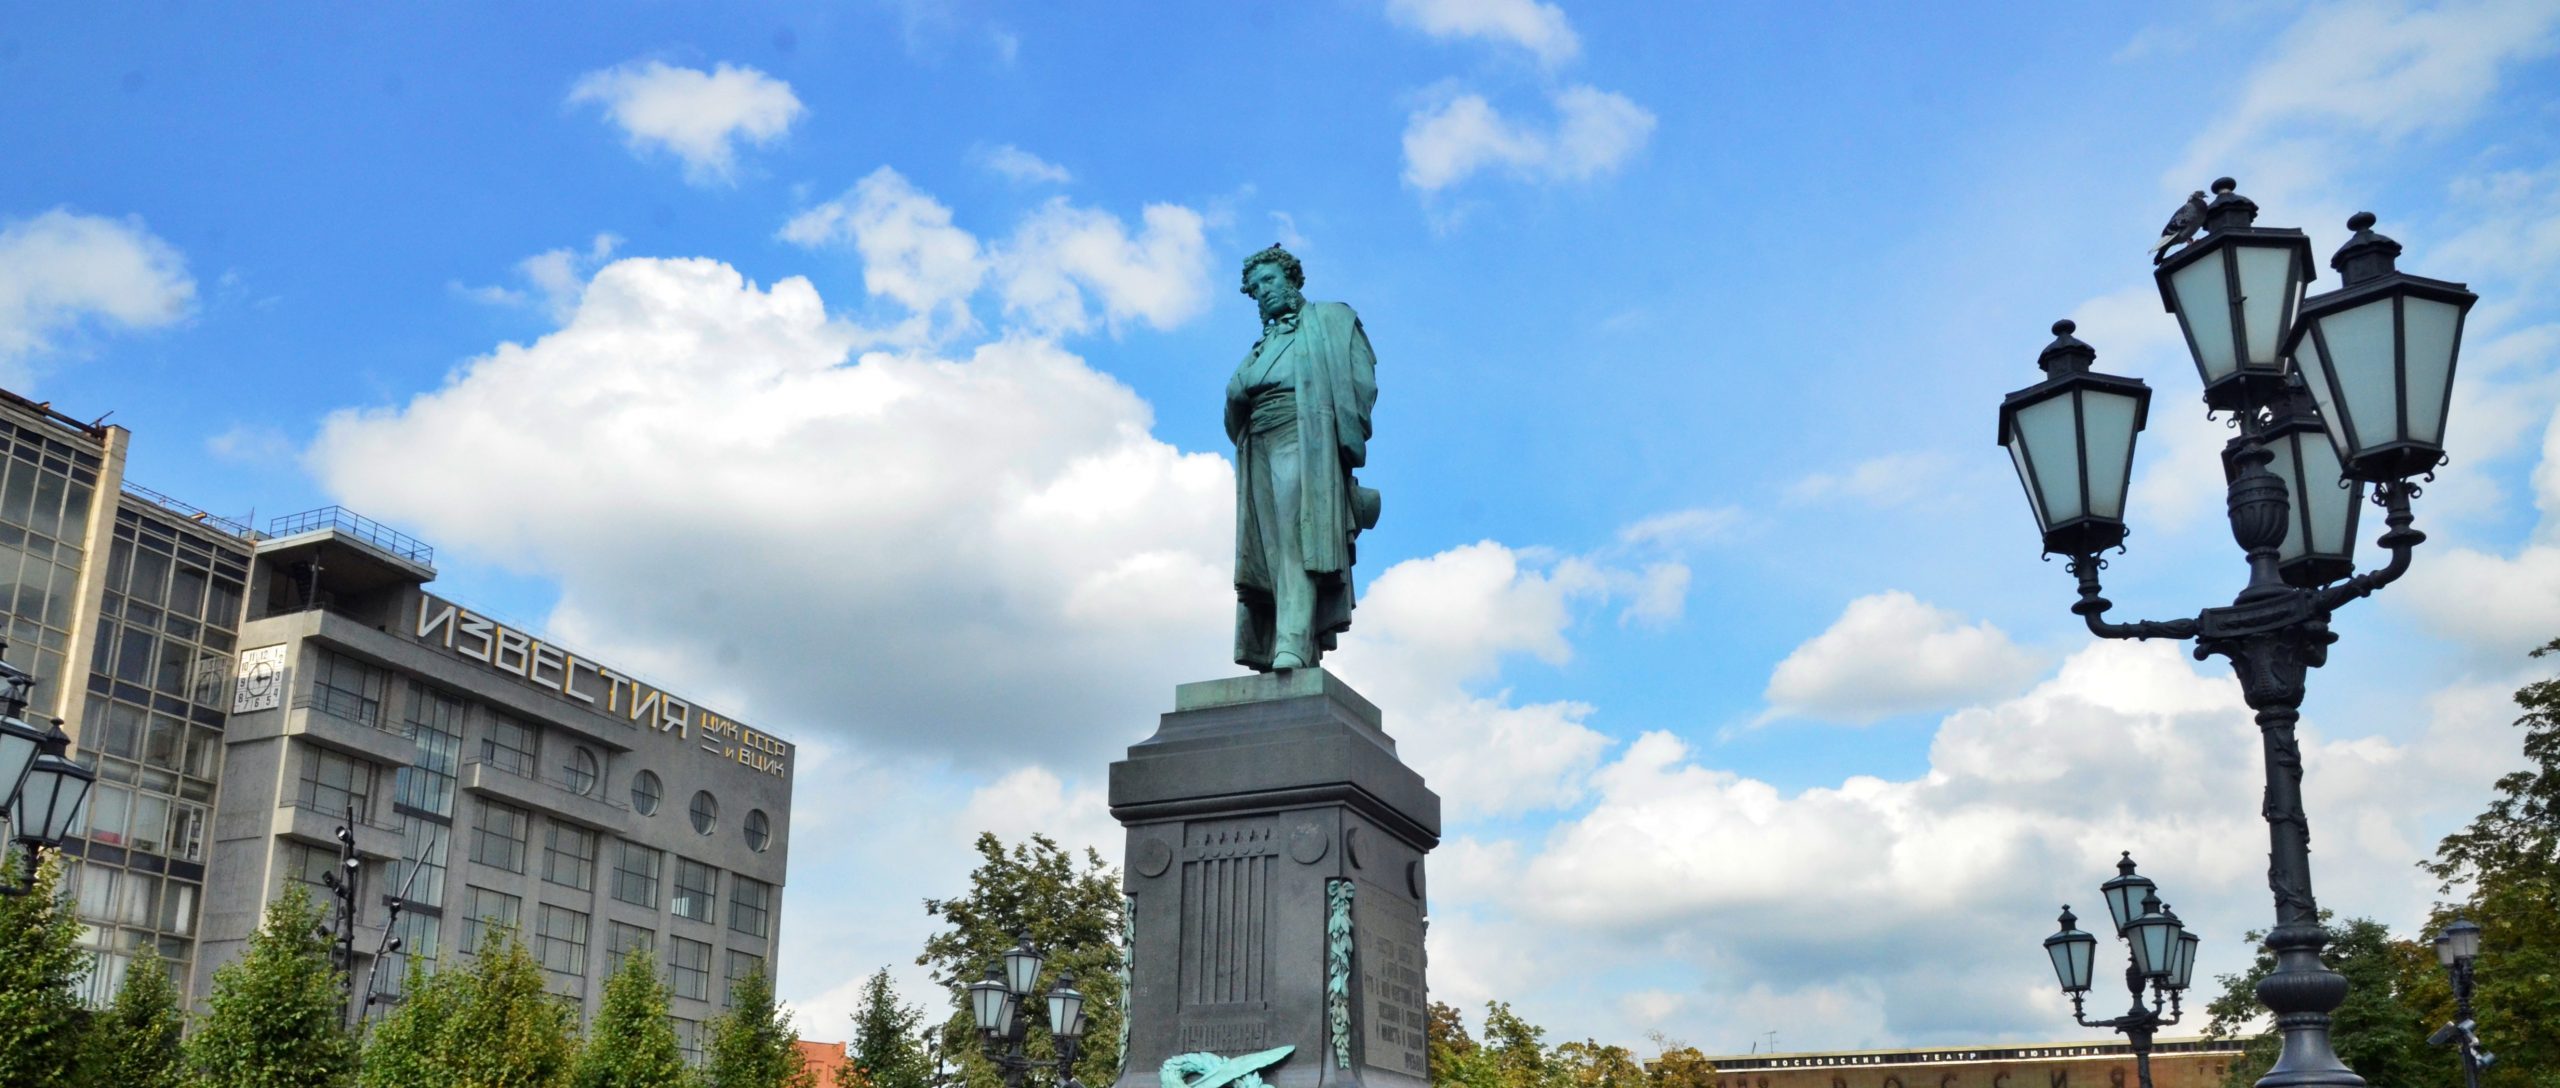 Новый арт-объект установили на Пушкинской площади. Фото: Анна Быкова